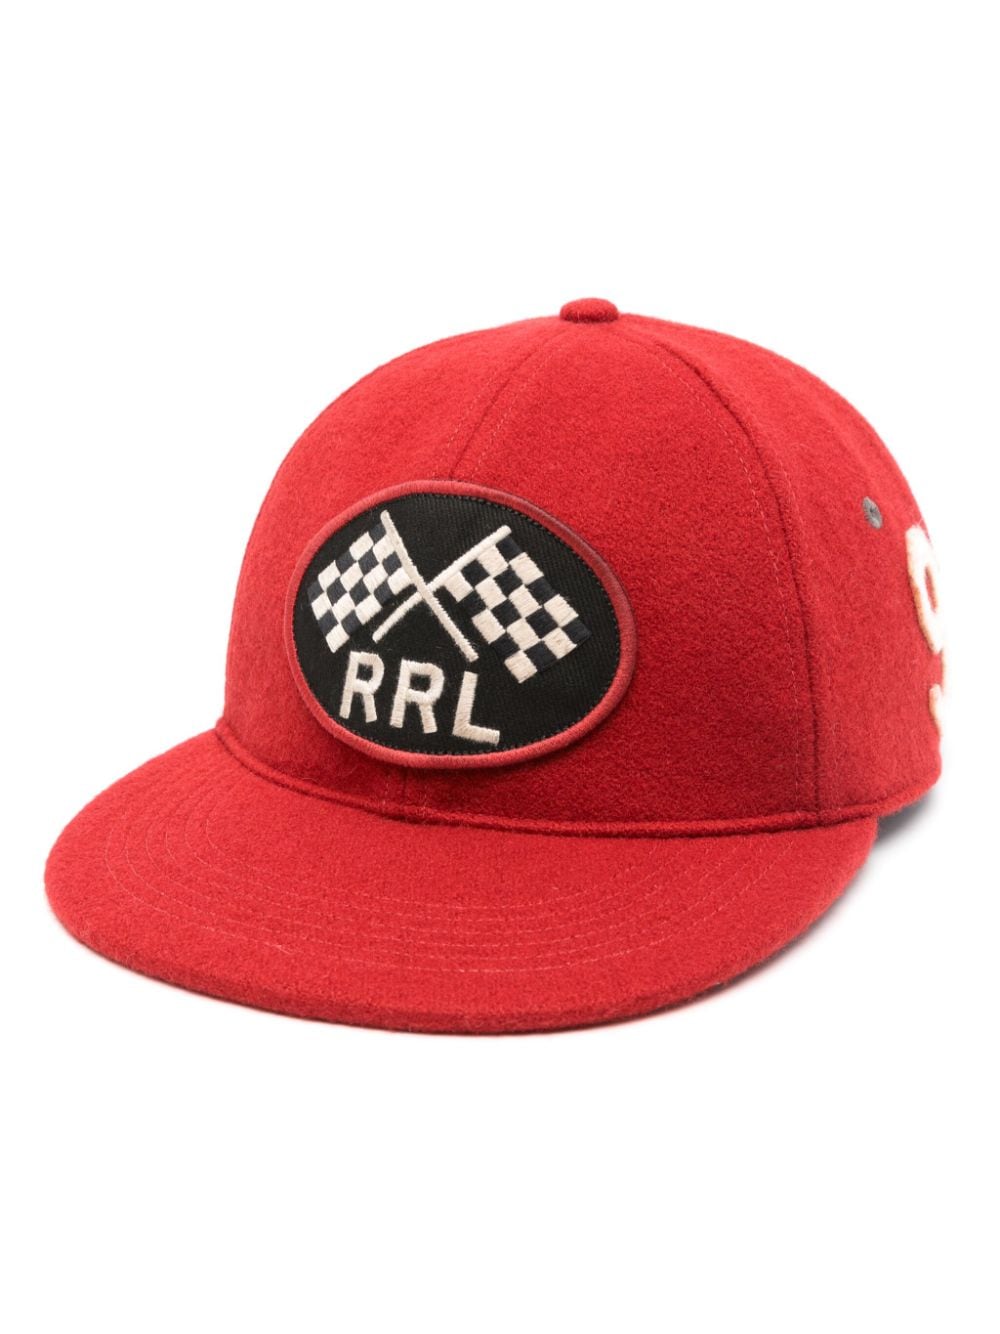 Ralph Lauren RRL appliqué-logo felted cap - Red